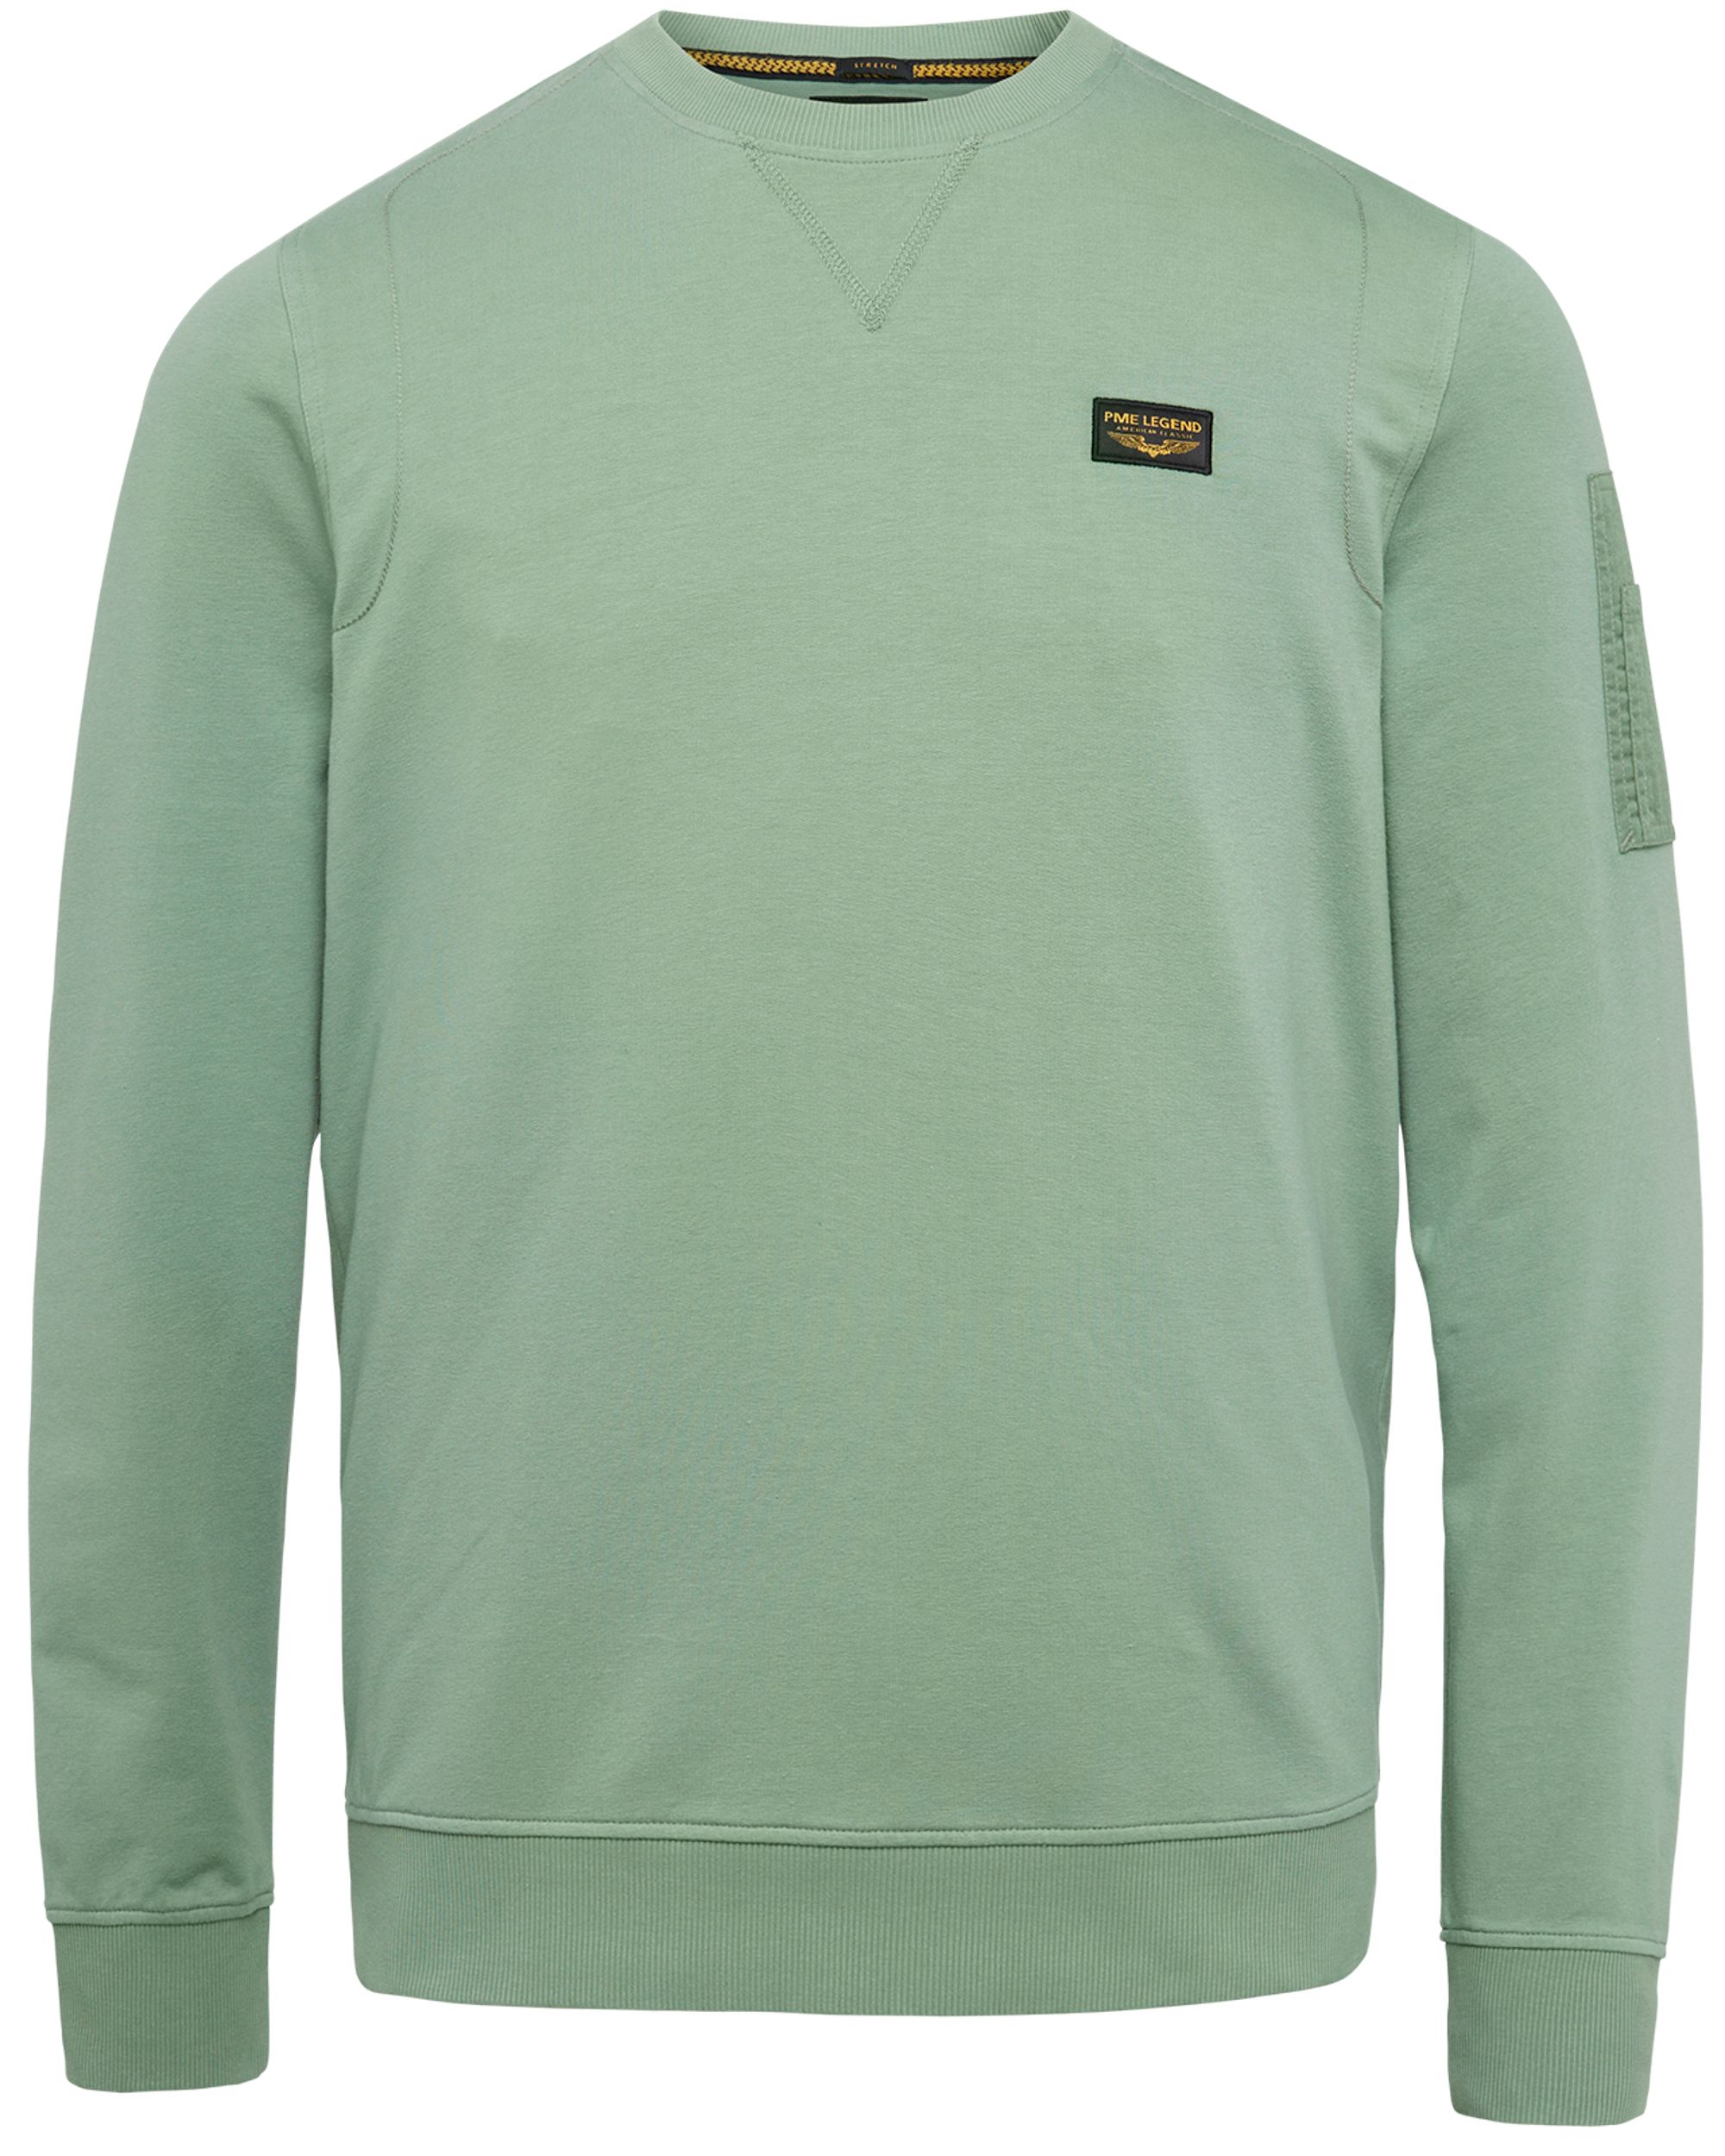 PME Legend Sweater Groen 082608-001-L